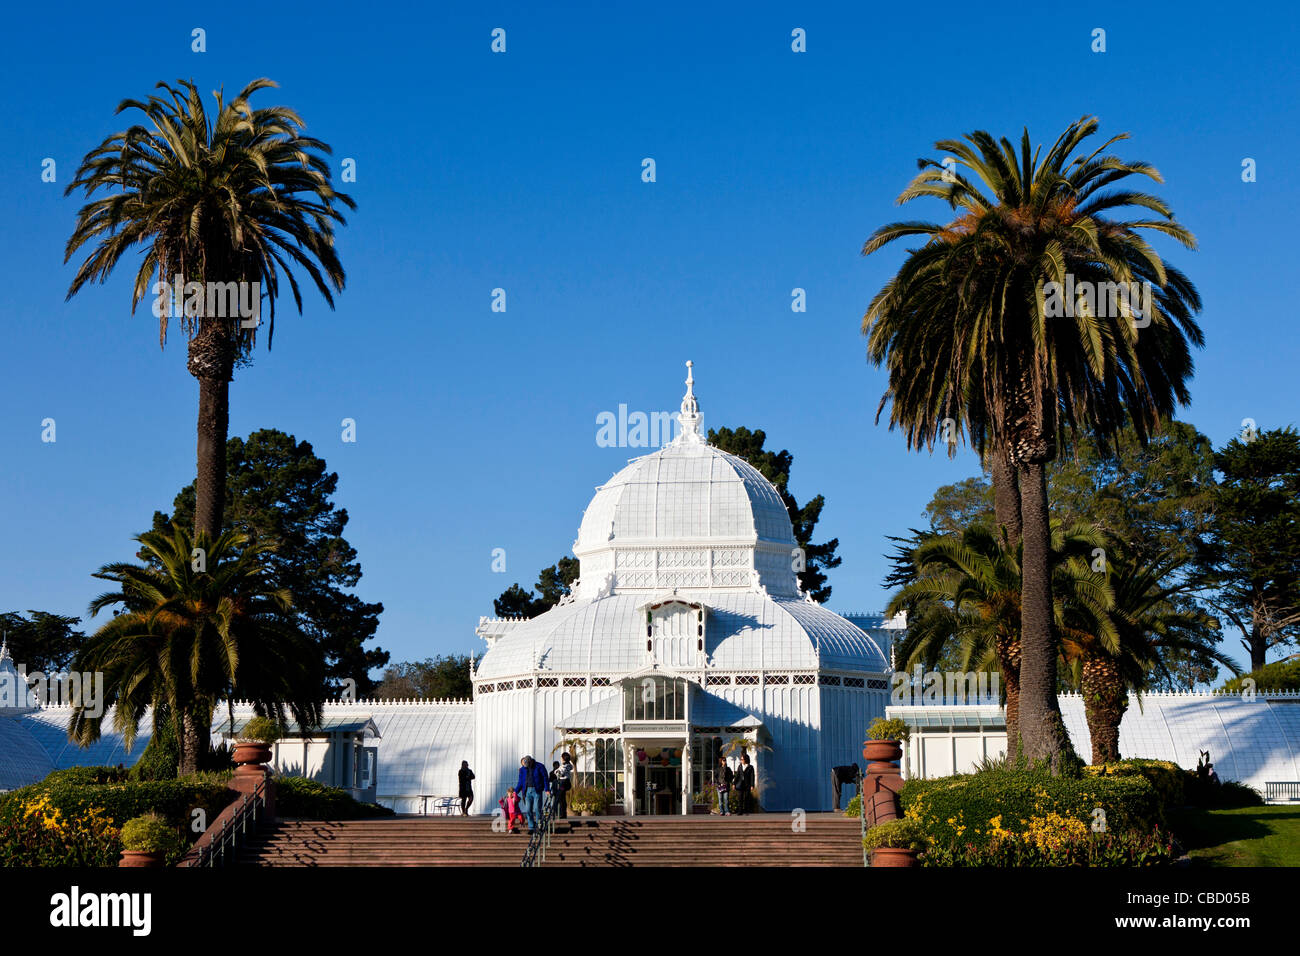 San Francisco Conservatory of Flowers, Golden Gate Park, San Francisco, Californie, États-Unis d'Amérique Banque D'Images